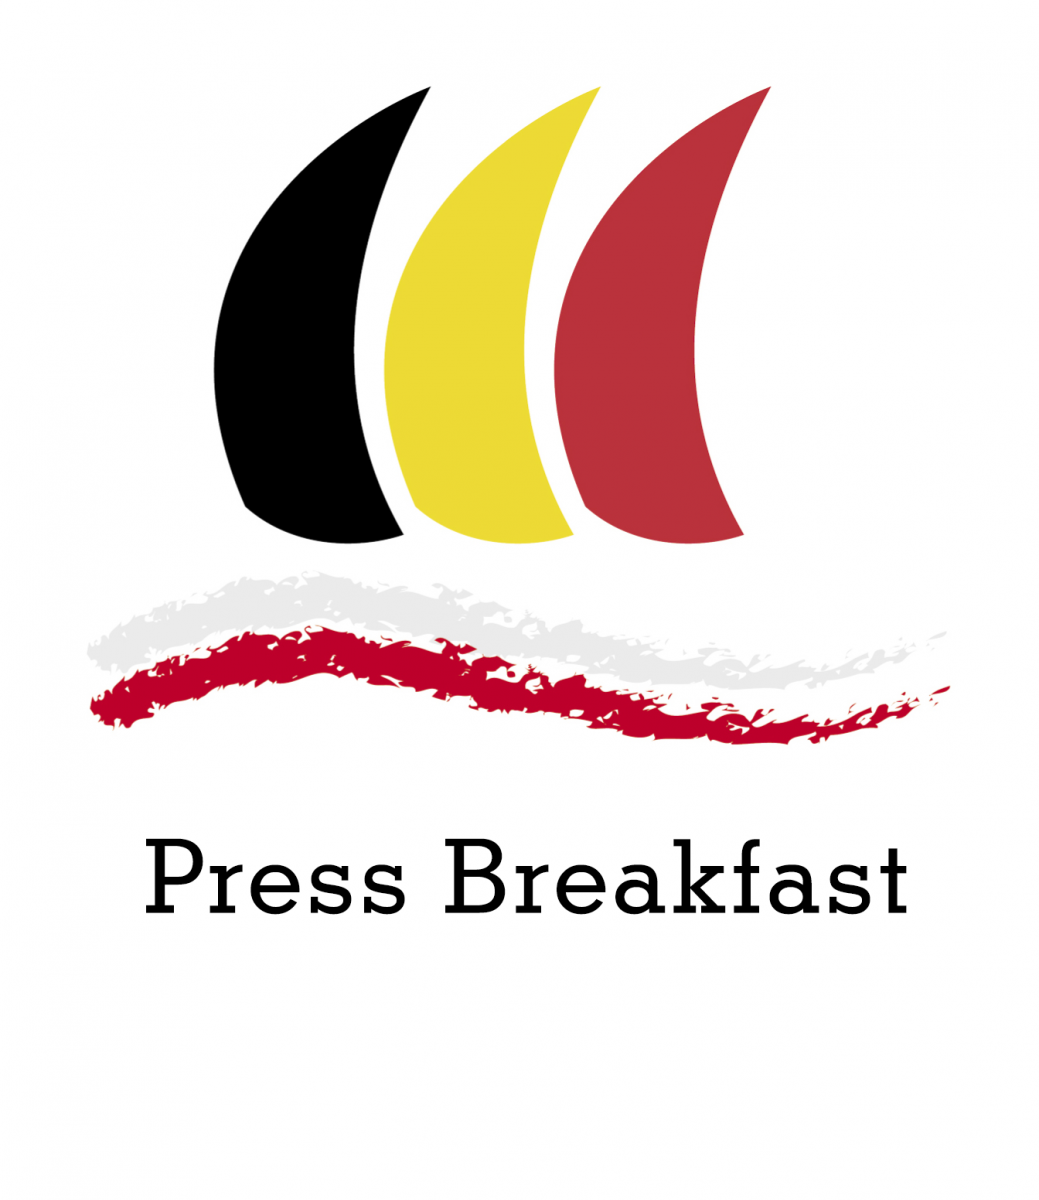 BELGIAN DAYS 2019: Press Breakfast